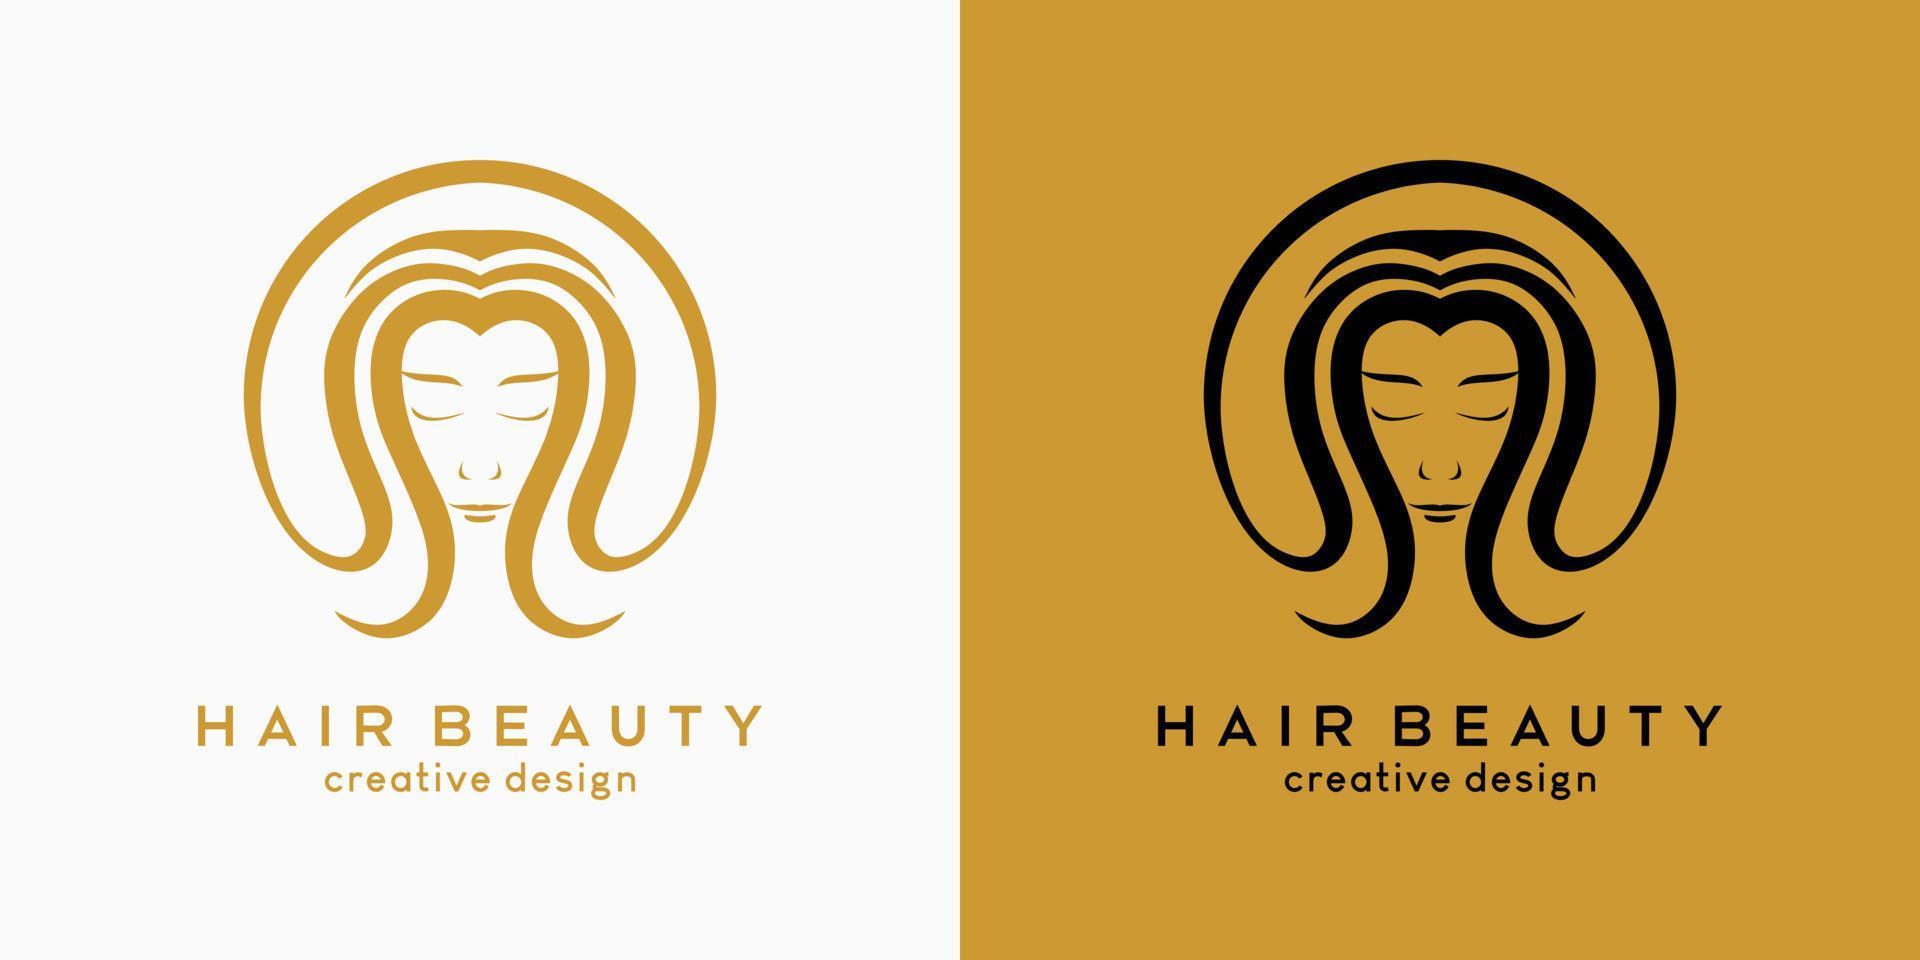 diseño del logo de la peluquería, belleza del cabello o cuidado del cabello, cara de mujer con cabello en concepto dibujado a mano en círculo vector